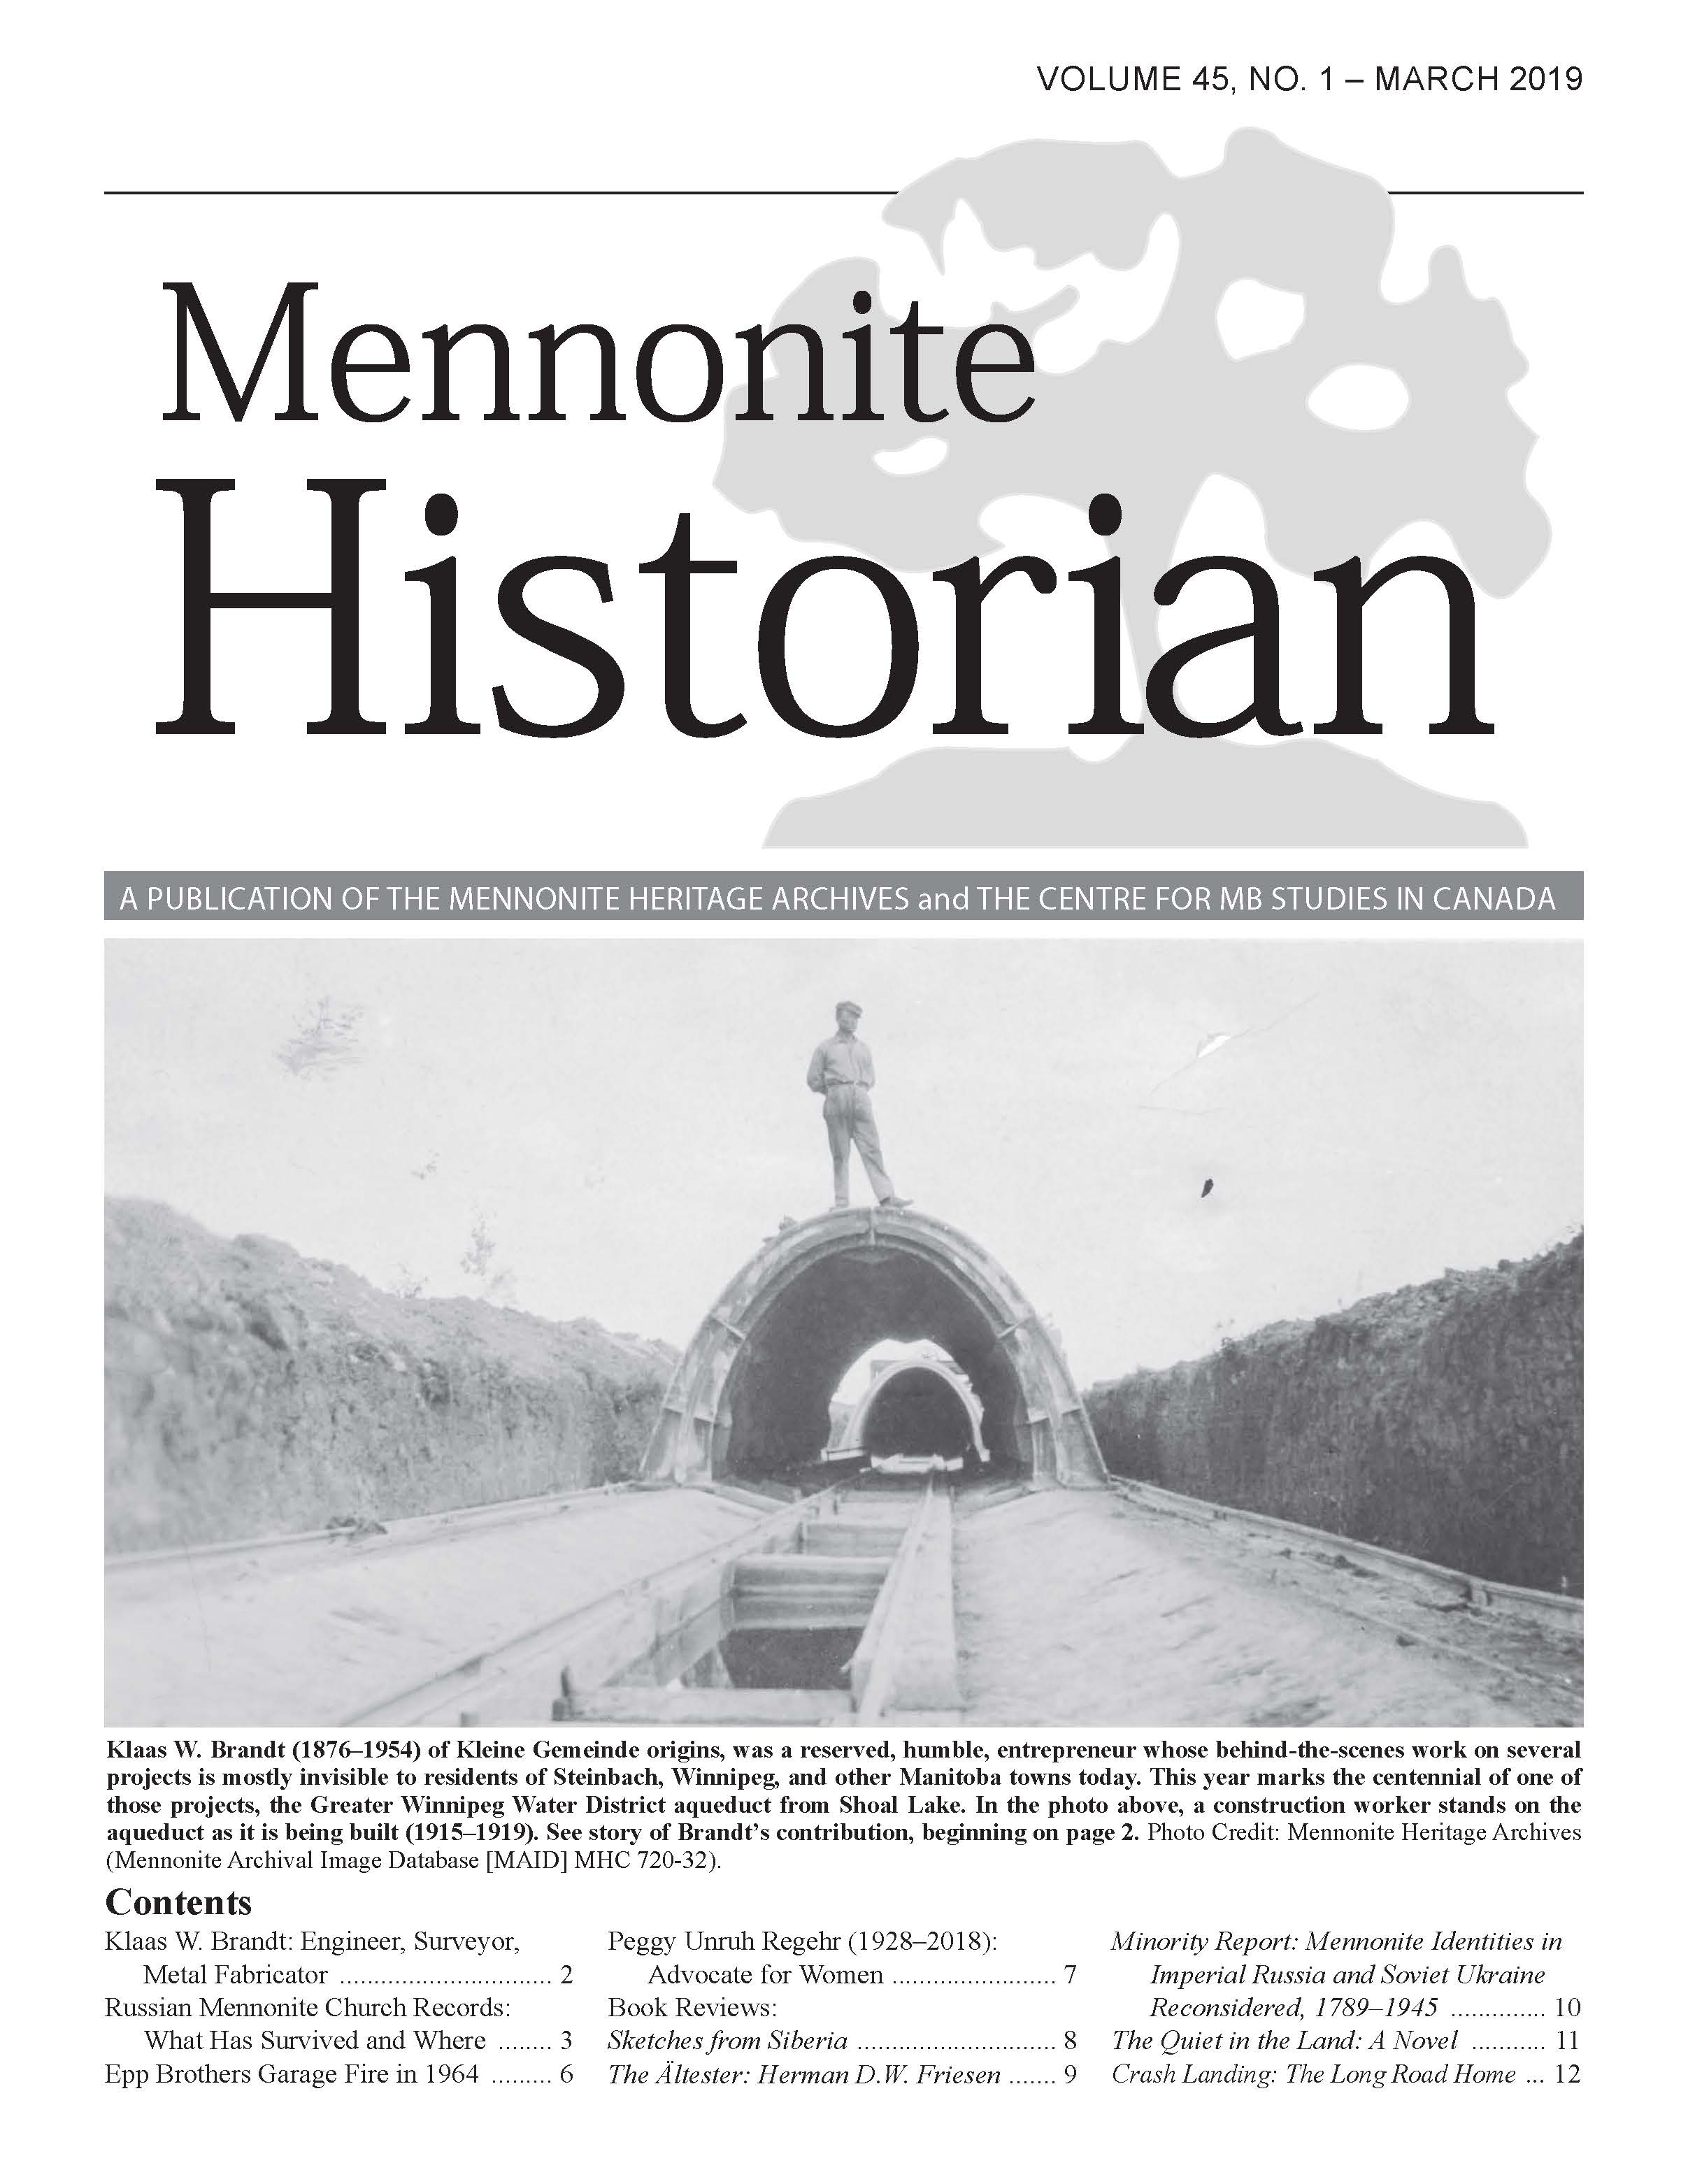 Mennonite Historian (March 2019)